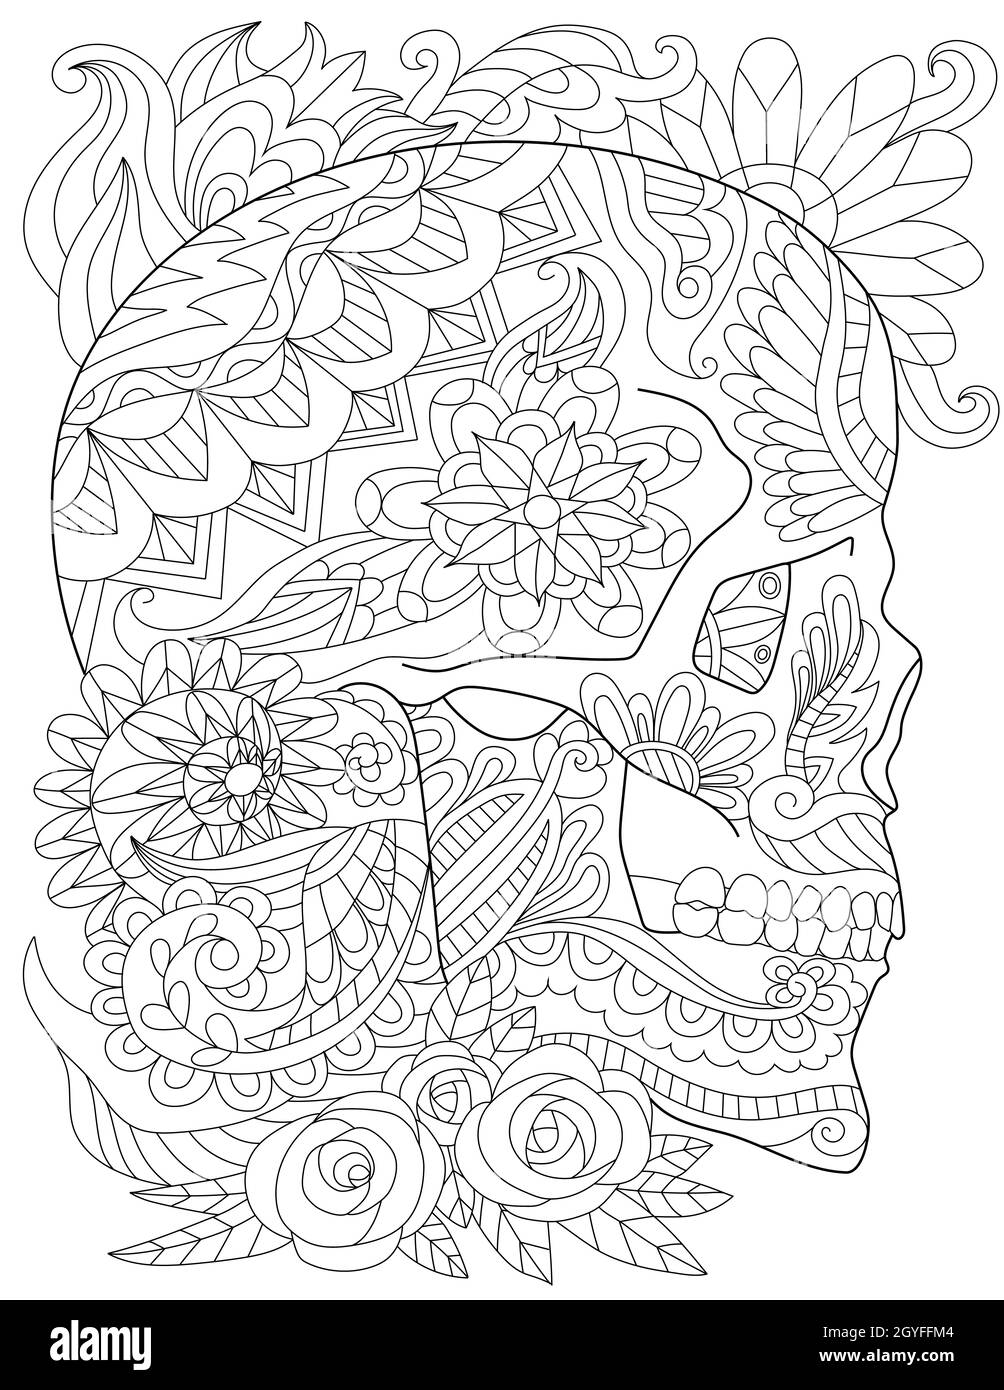 Crâne Tattoo dessin entouré de roses et de feuilles regardant dans la vue latérale. Banque D'Images